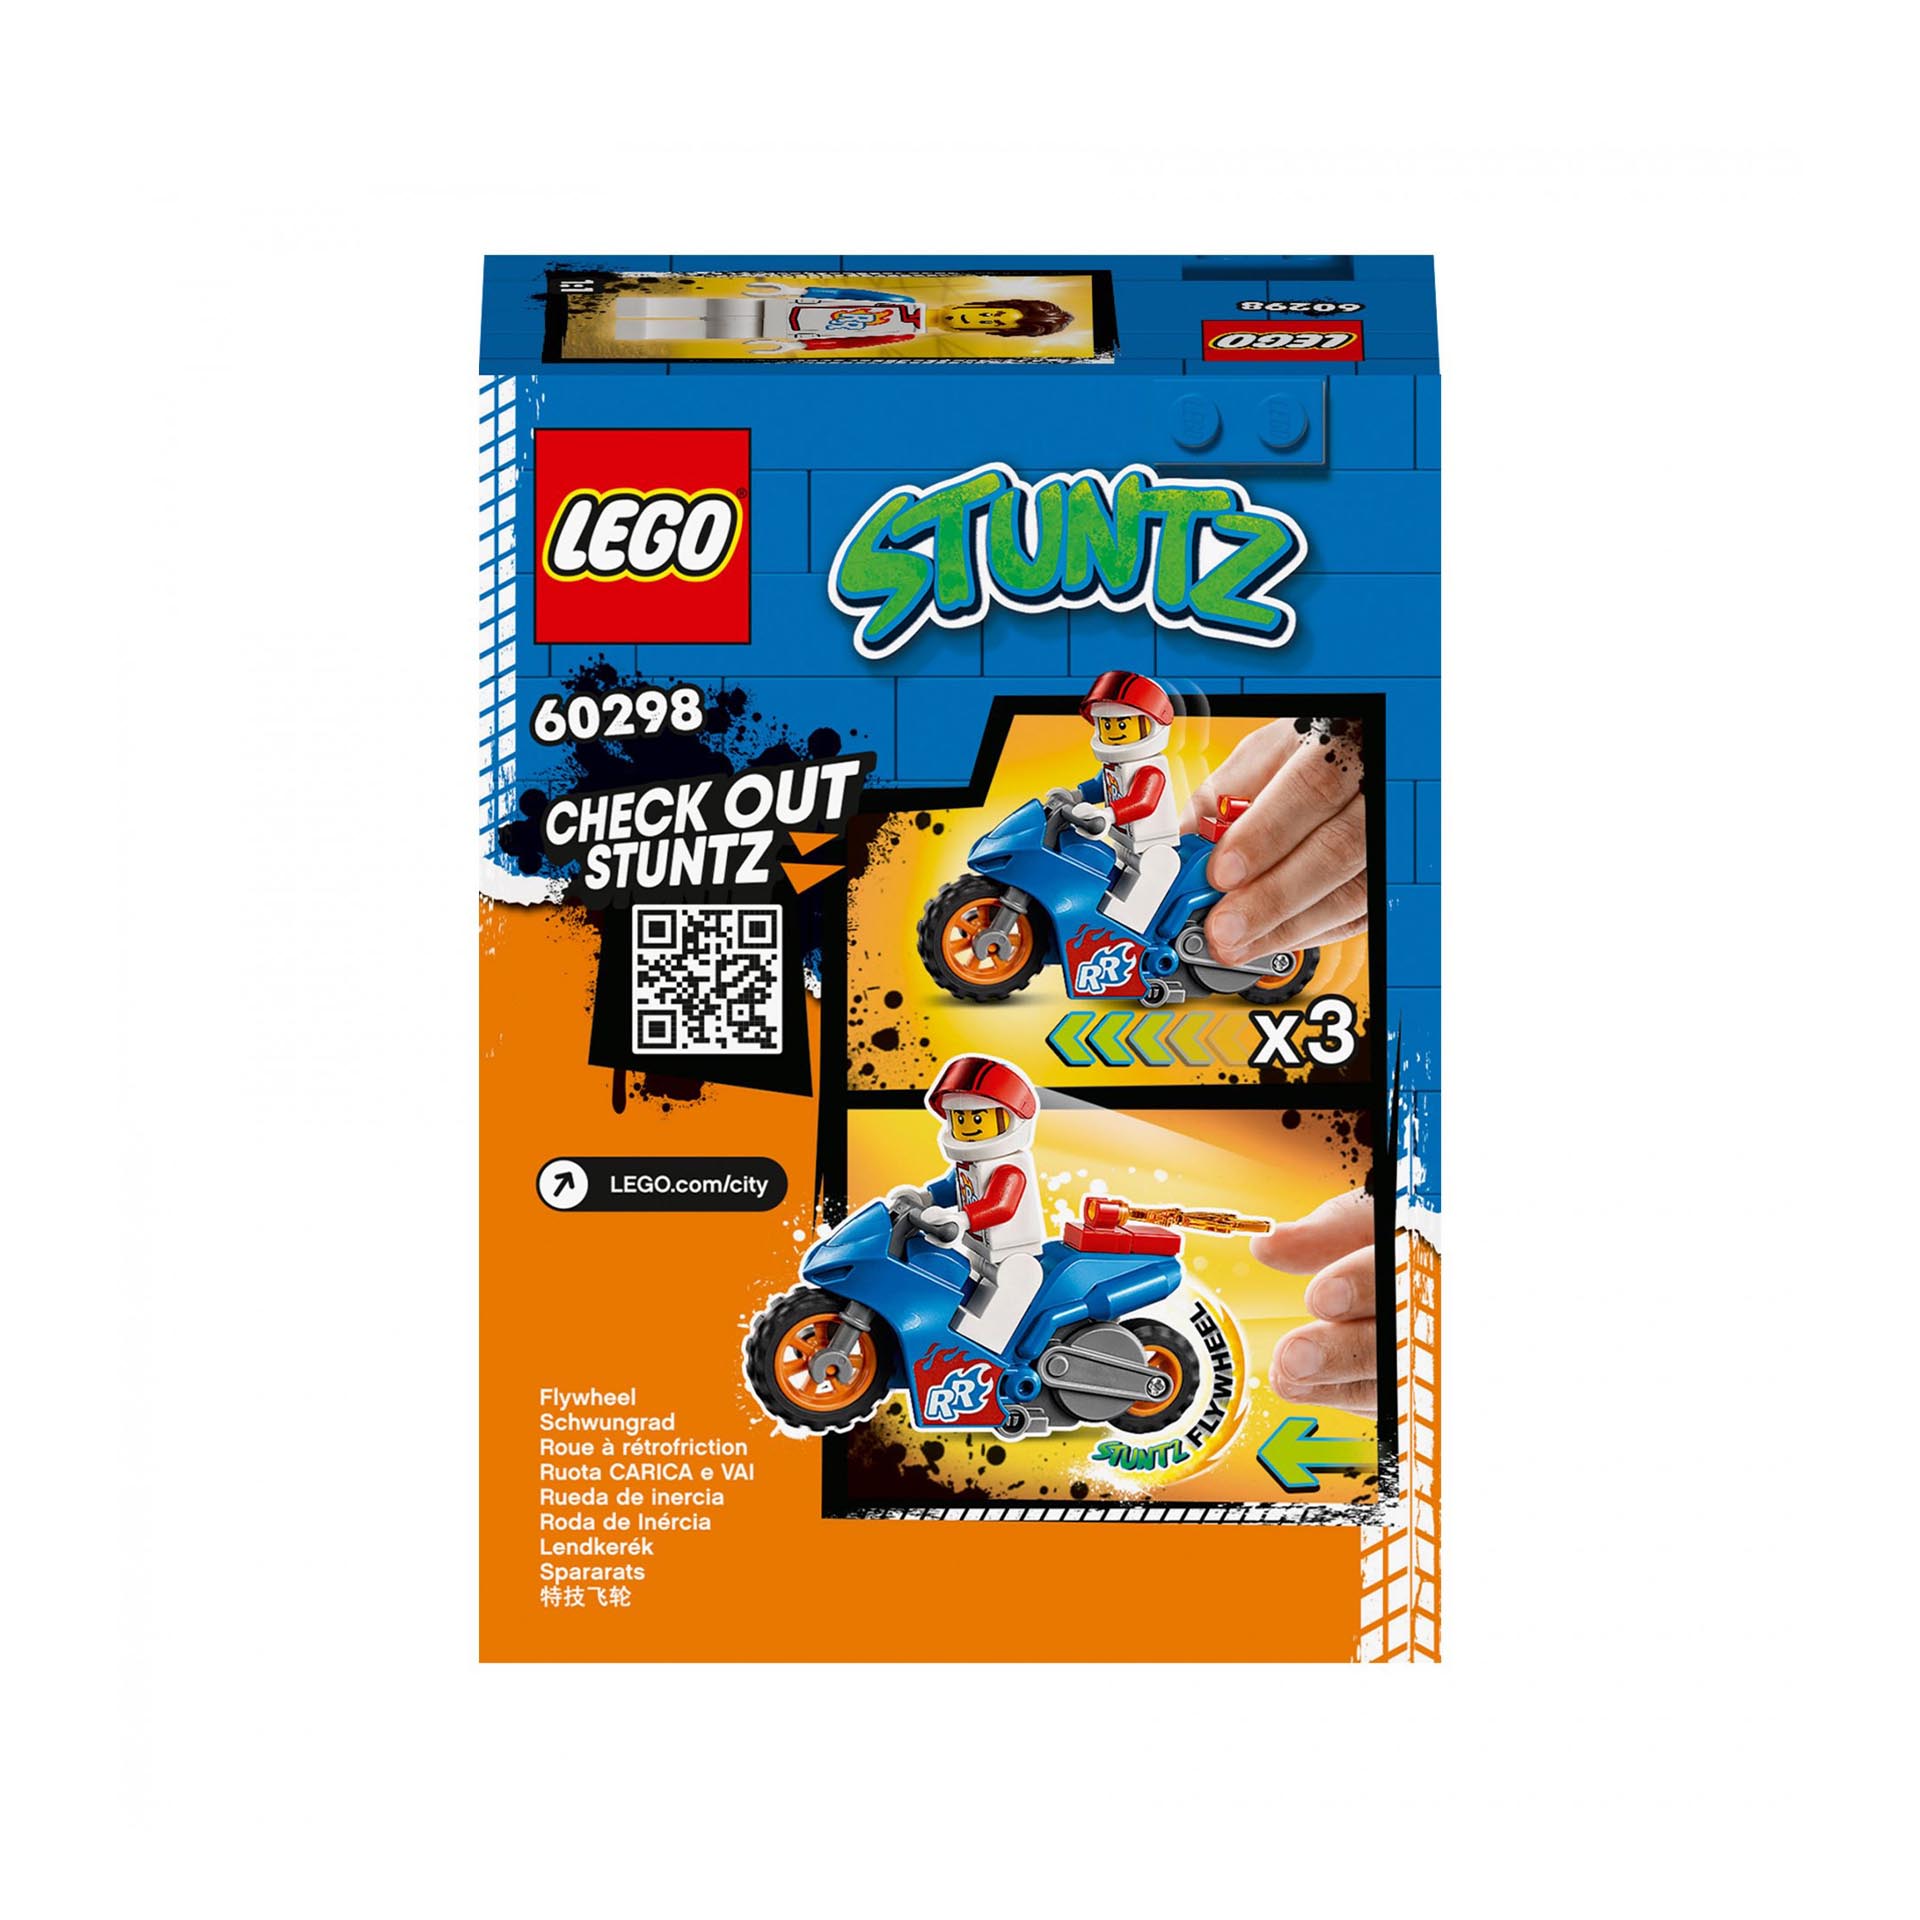 LEGO City Stuntz Stunt Bike Razzo, Set con Moto Giocattolo con Meccanismo a Spin 60298, , large